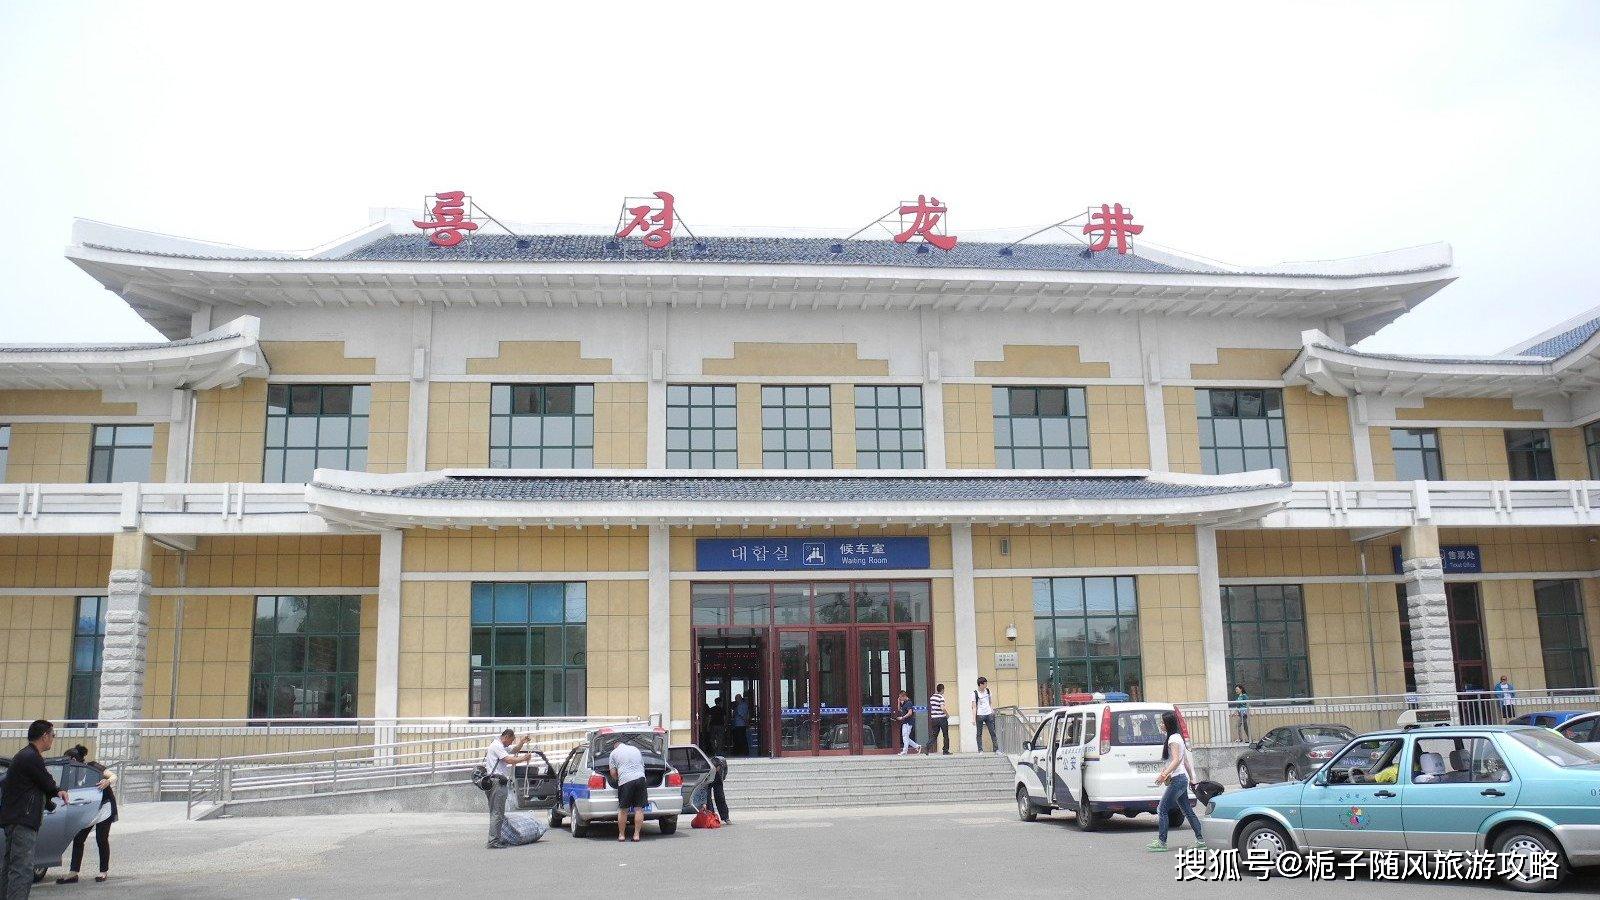 原创吉林省龙井市的主要客运站龙井火车站